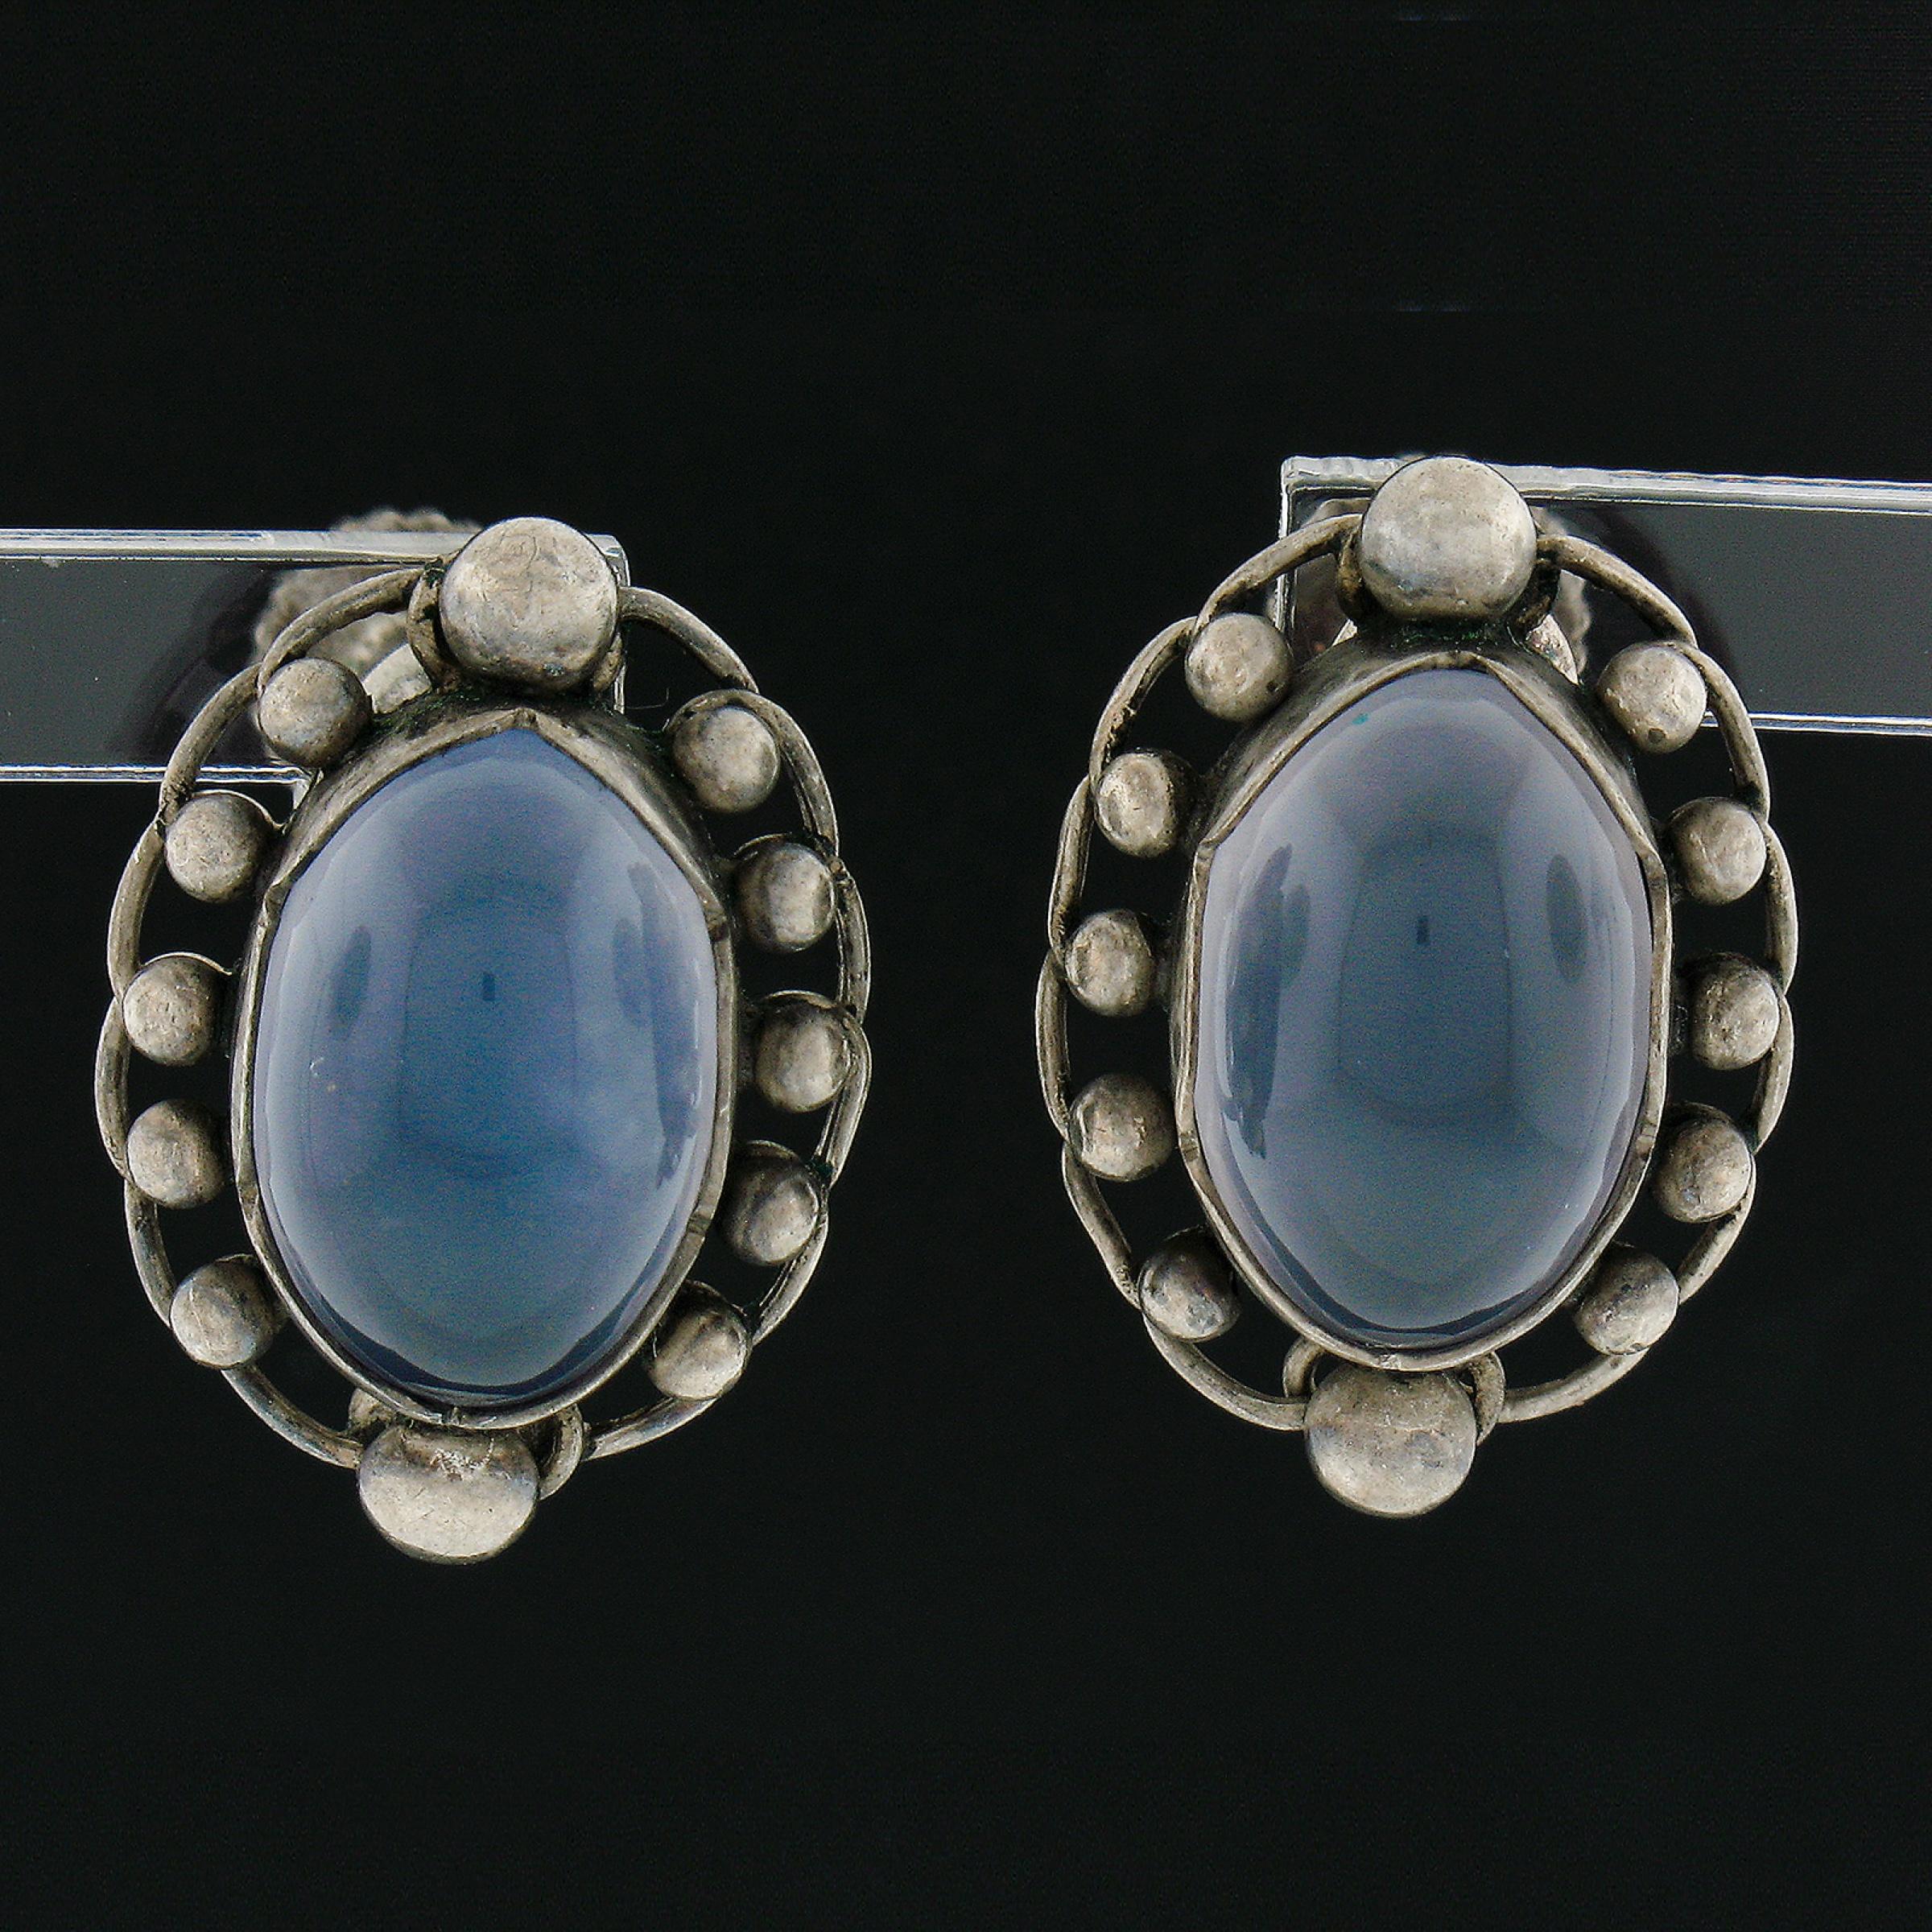 Diese bezaubernden, in Dänemark hergestellten Vintage-Ohrringe #81 von Georg Jensen sind aus massivem Sterlingsilber gefertigt und mit einem Chalzedon besetzt. Der Rahmen ist mit Perlen durchbrochen und handgefertigt. Diese Ohrringe sind mit ihren